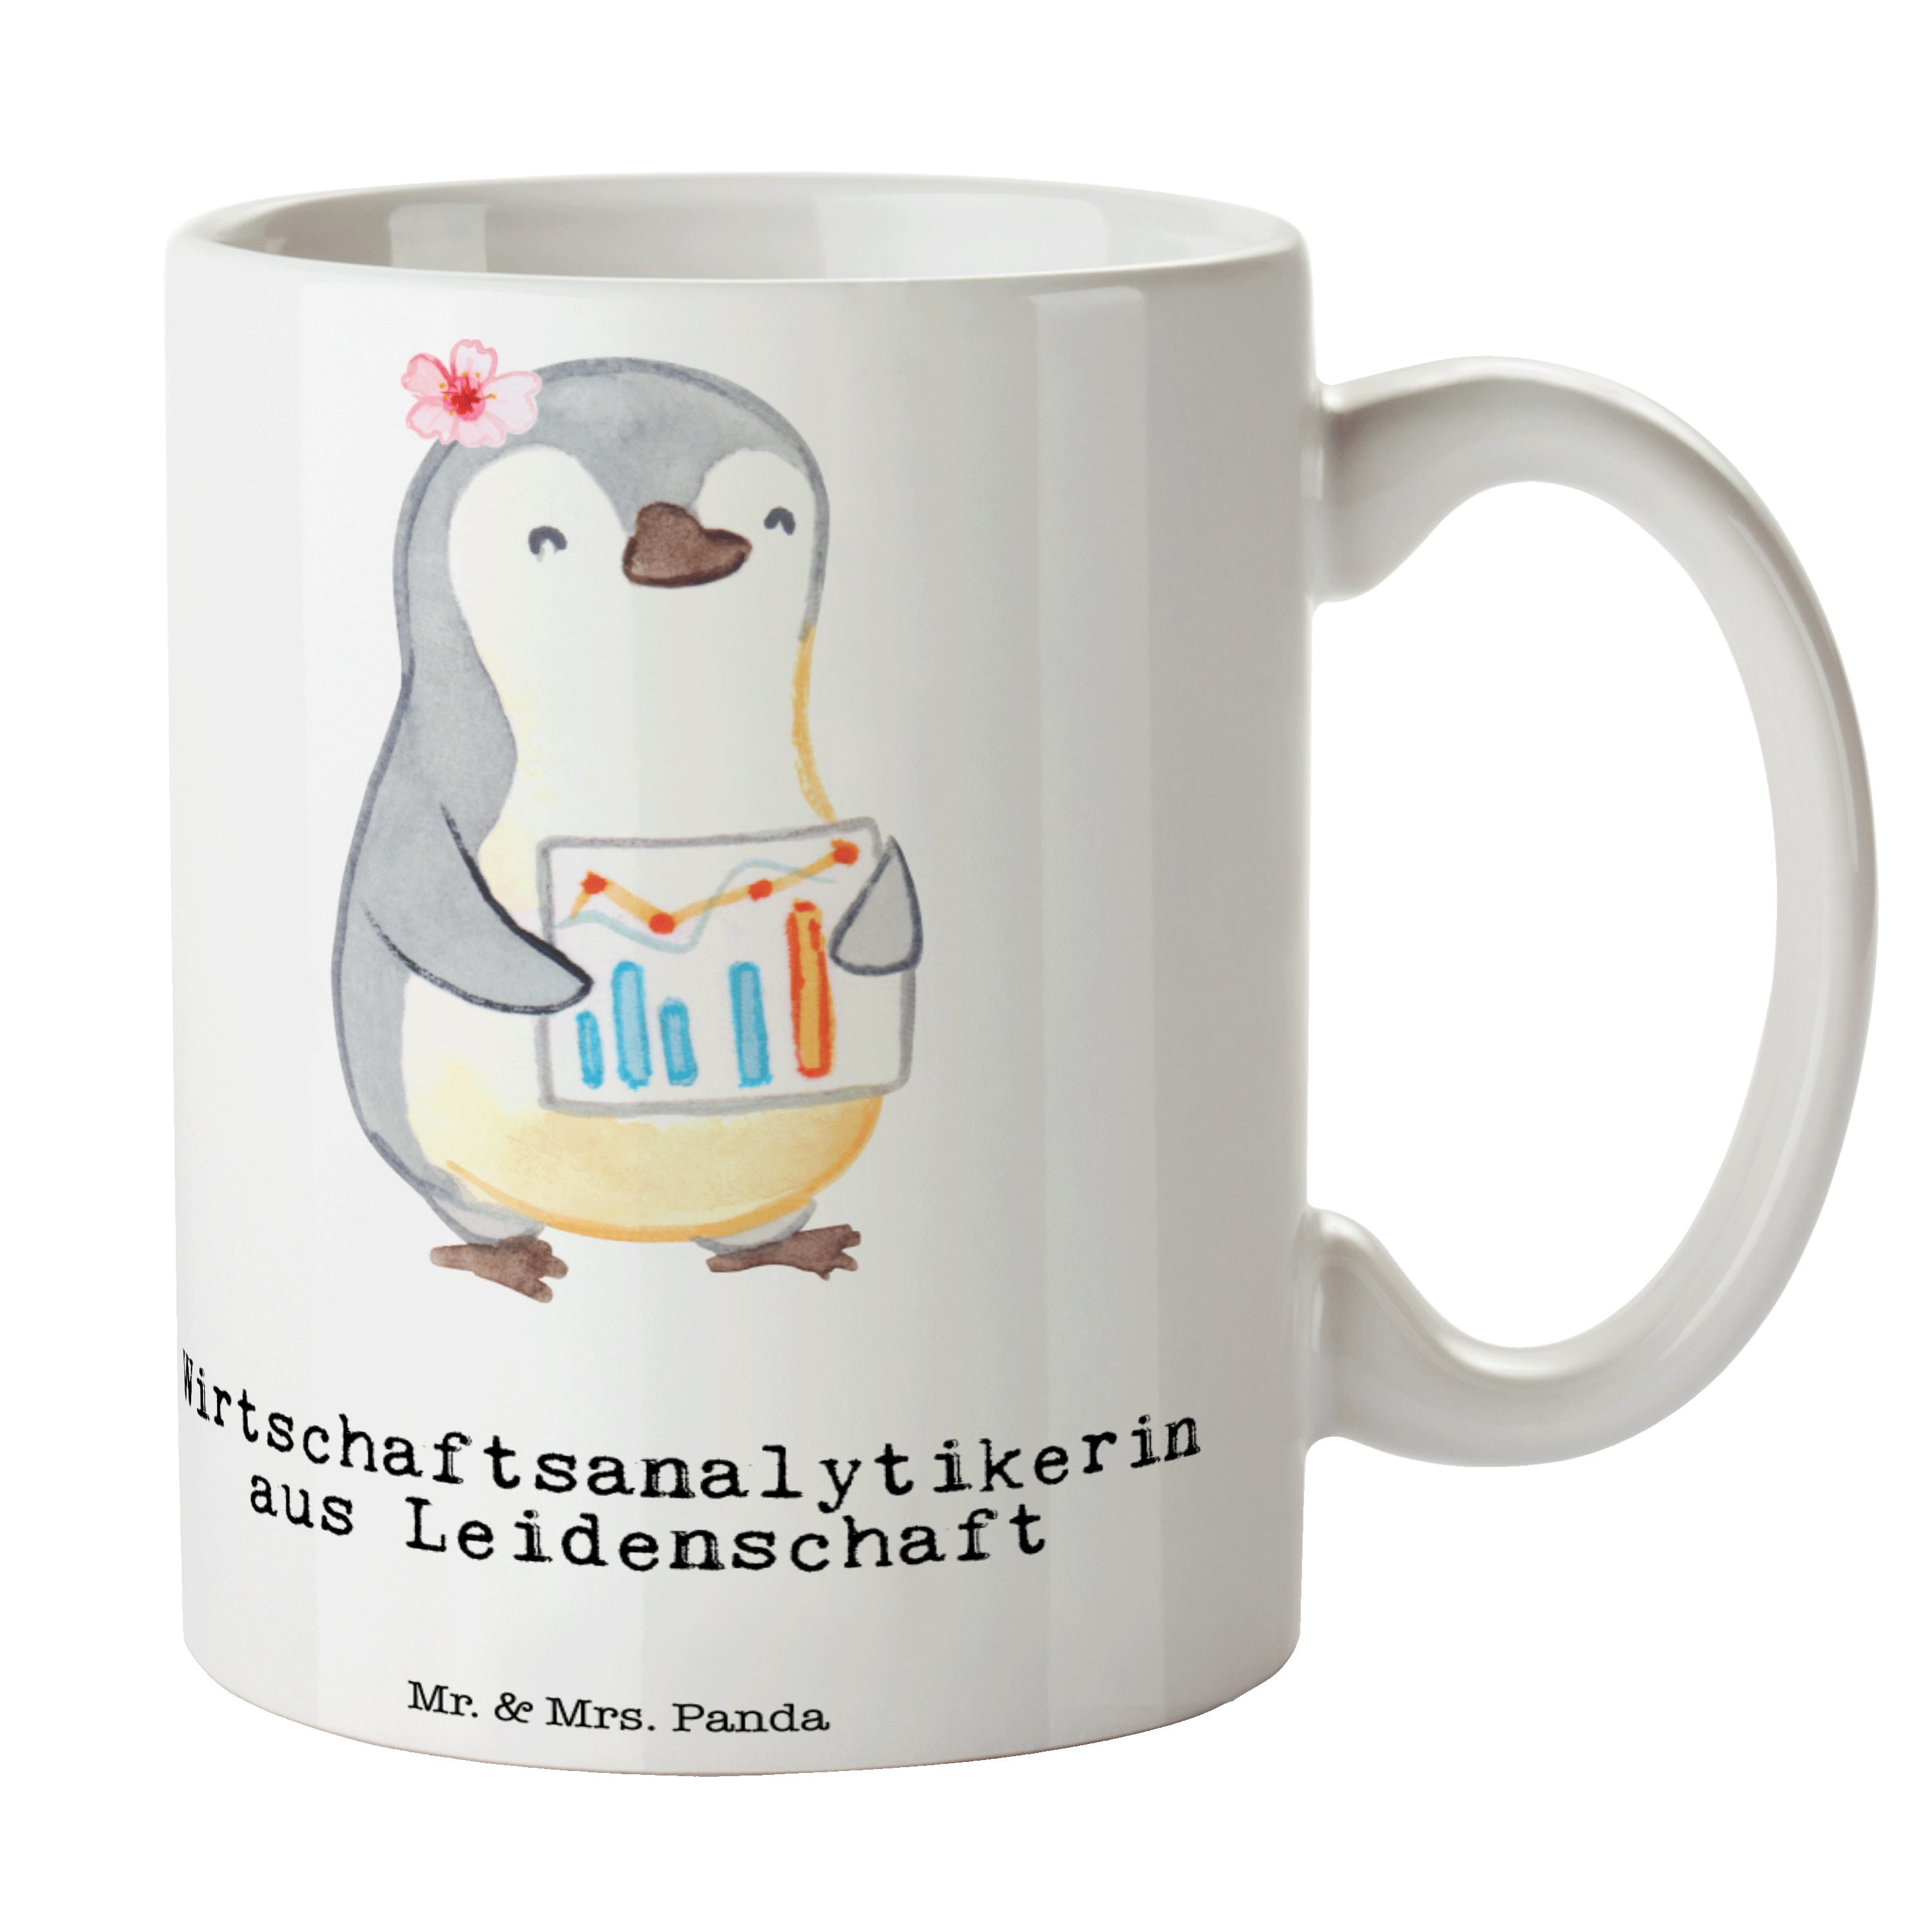 & - Mrs. Mr. Weiß - aus Tasse Geschenk, Leidenschaft Wirtschaftsanalytikerin Kaffeetas, Panda Keramik